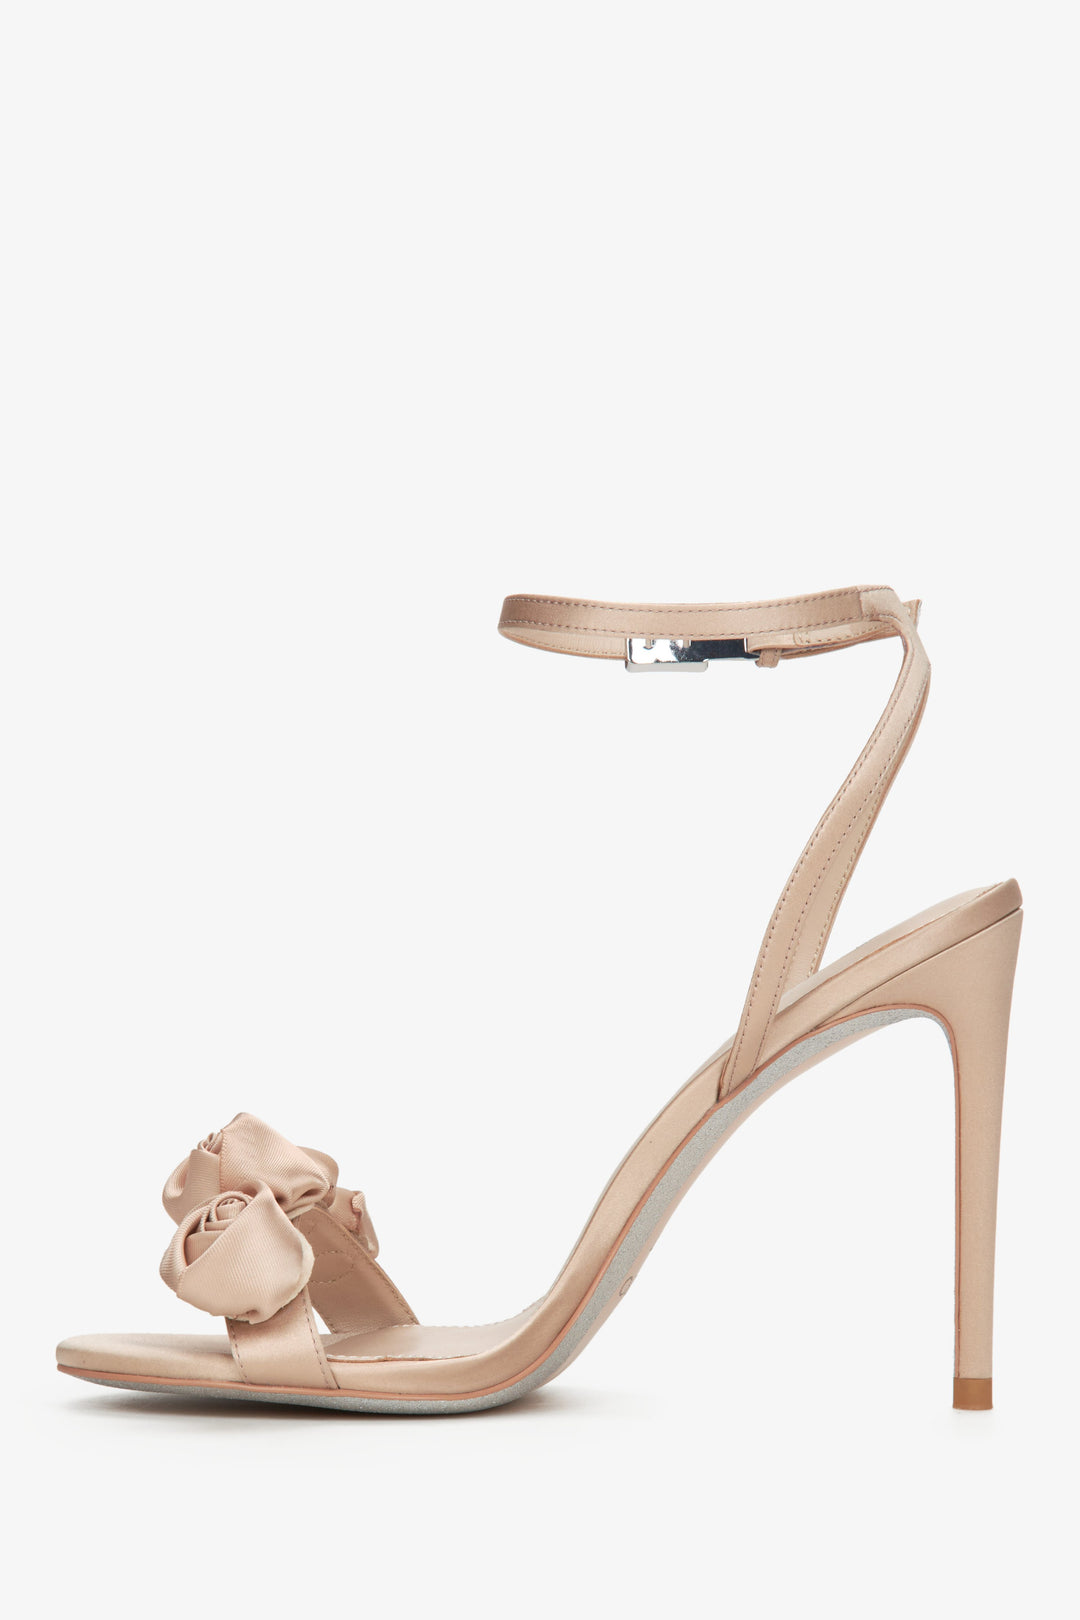 Estro women's beige high heel sandals - shoe profile.